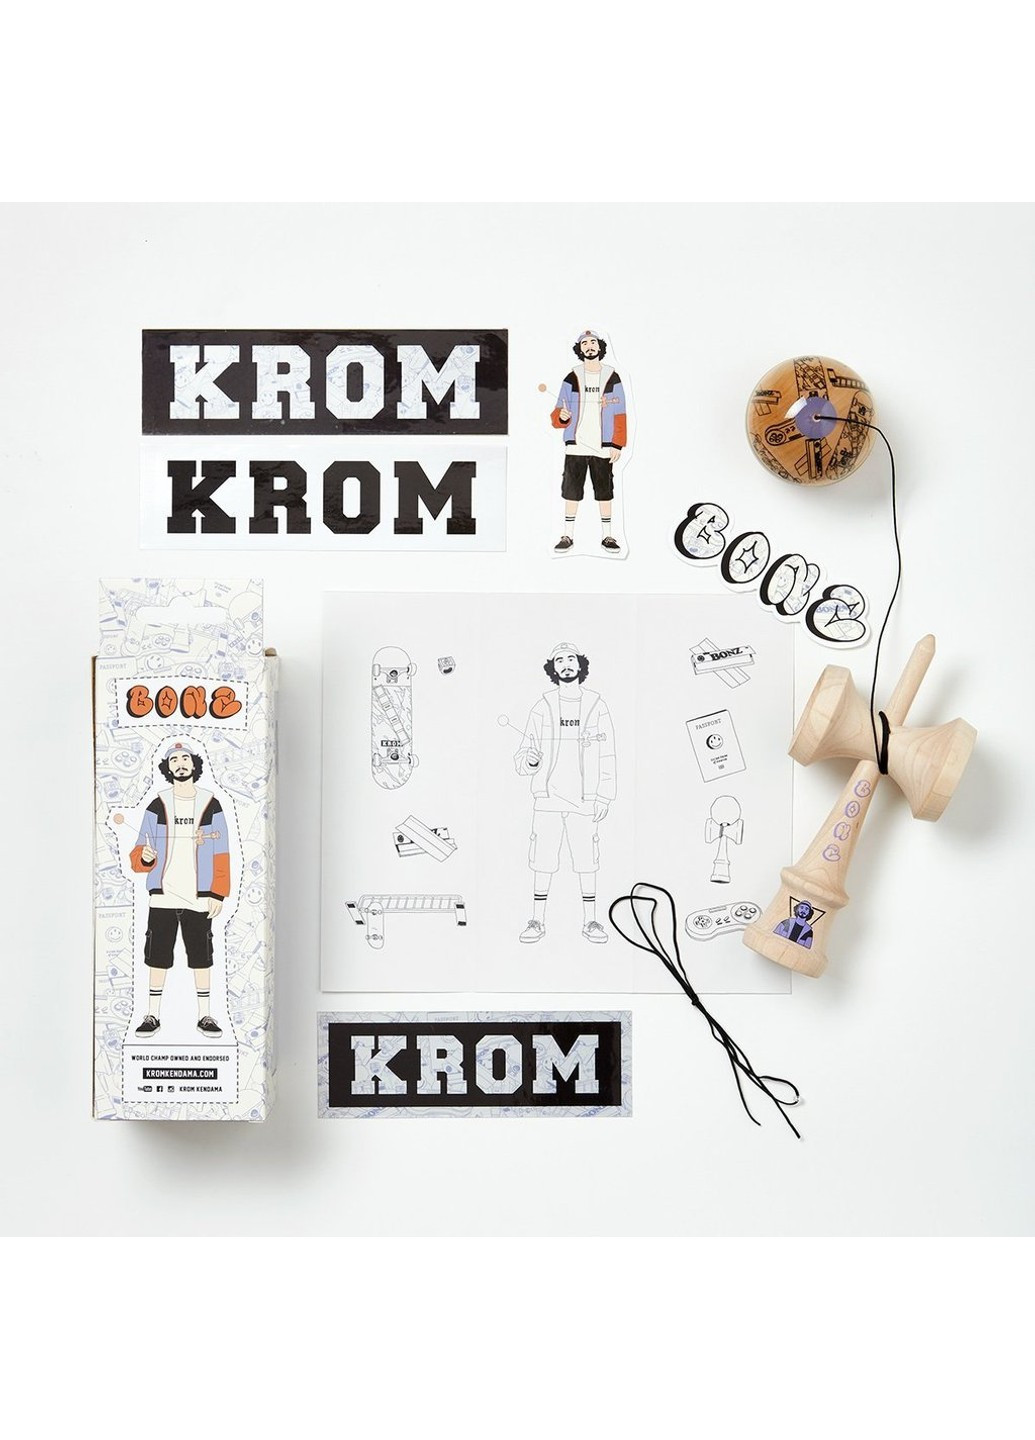 Кендама DJ Pro Mod Bonz Krom (258190163)